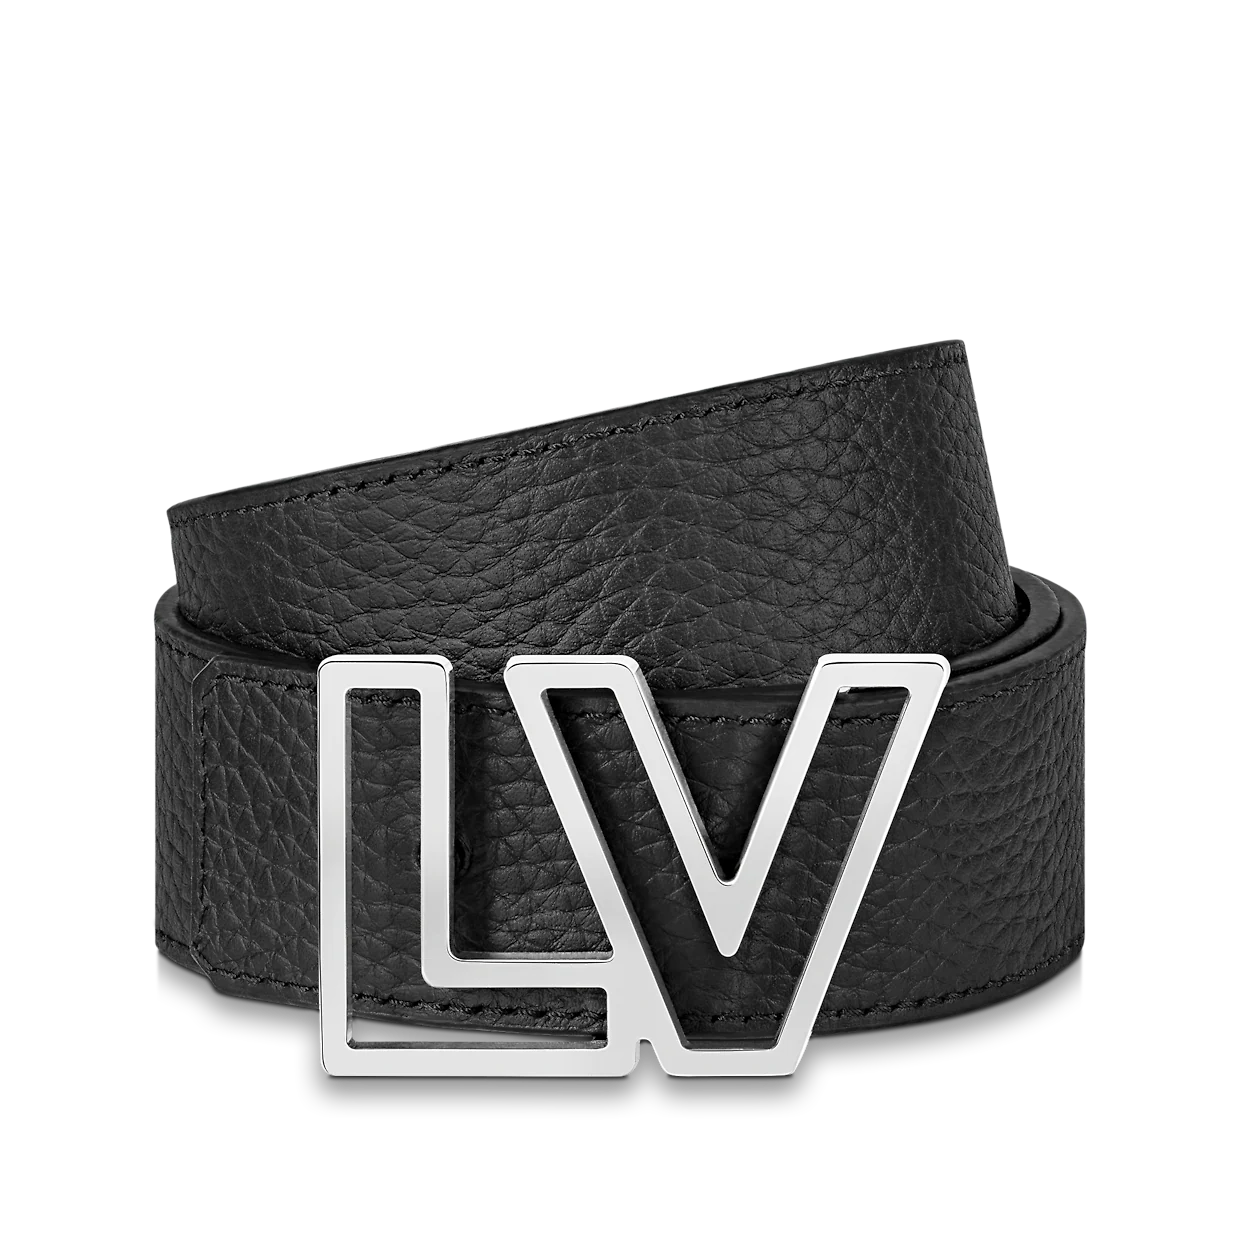 Cách sử dụng thắt lưng LV chính hãng theo chia sẻ của nhà sản xuất